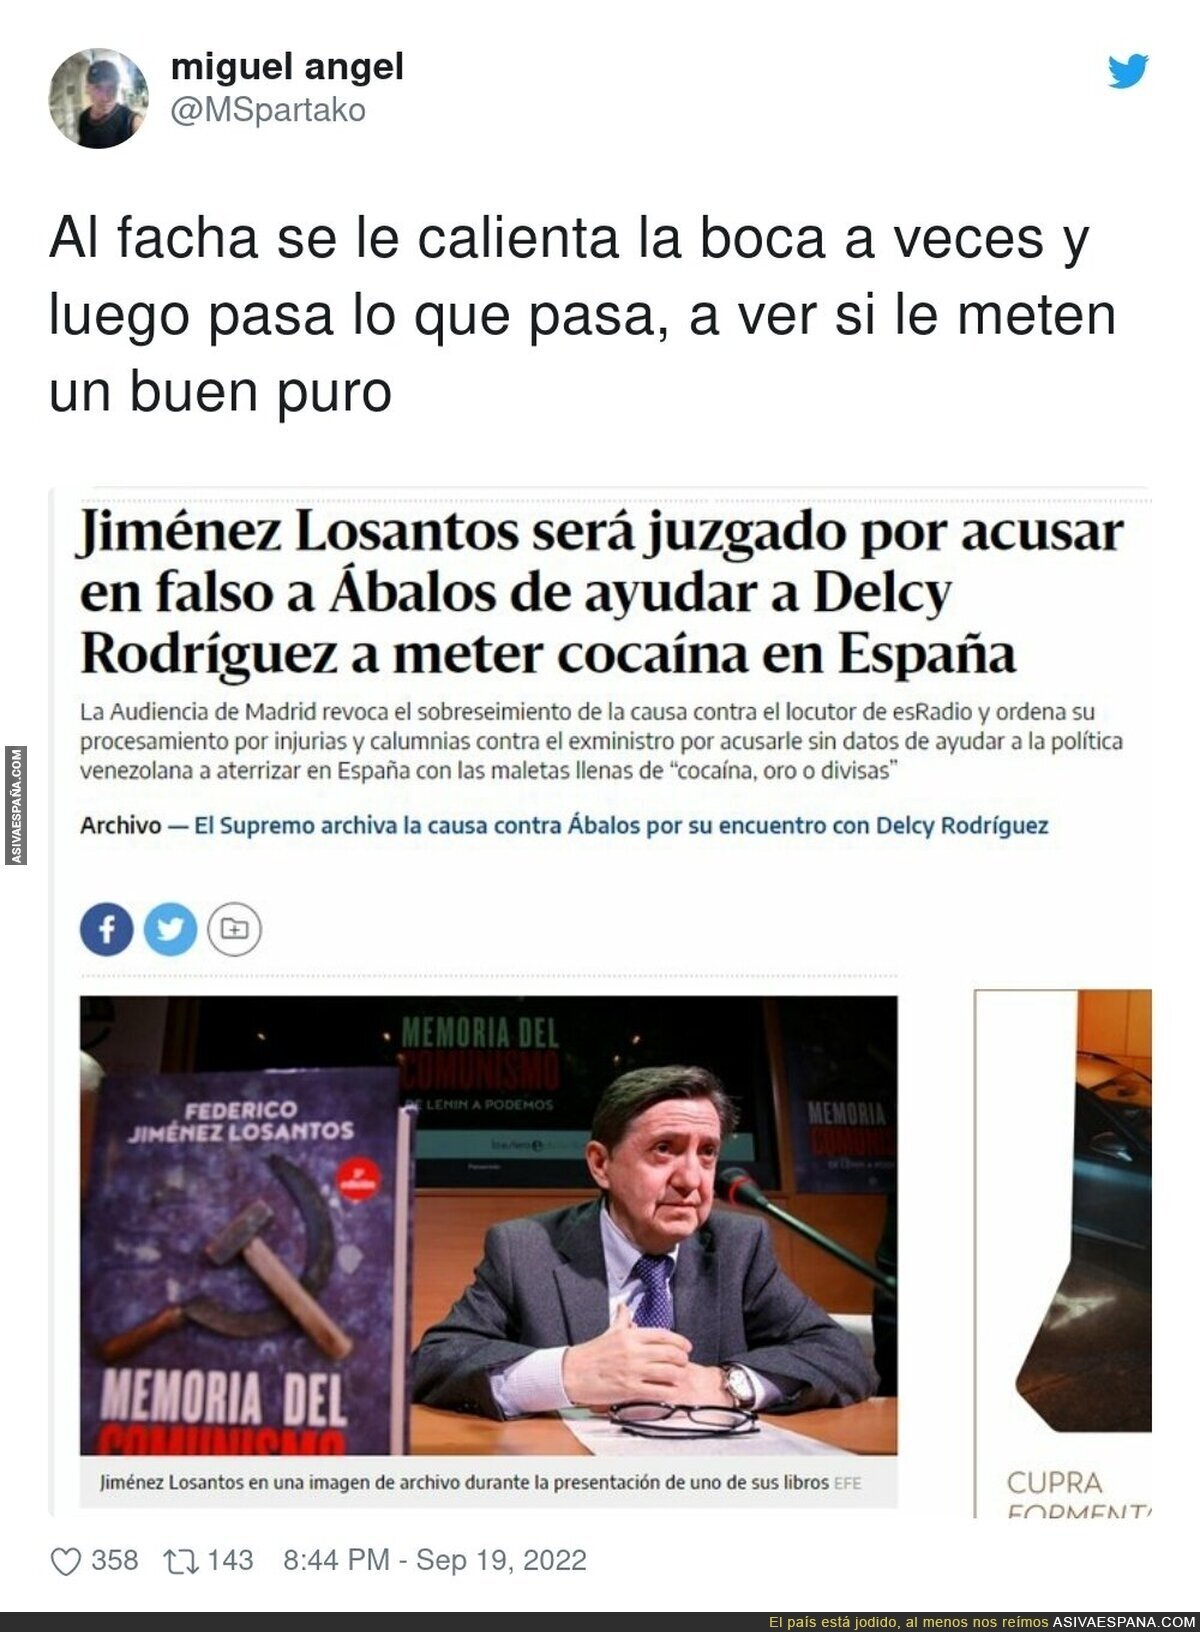 Federico Jiménez Losantos debería relajarse un poco